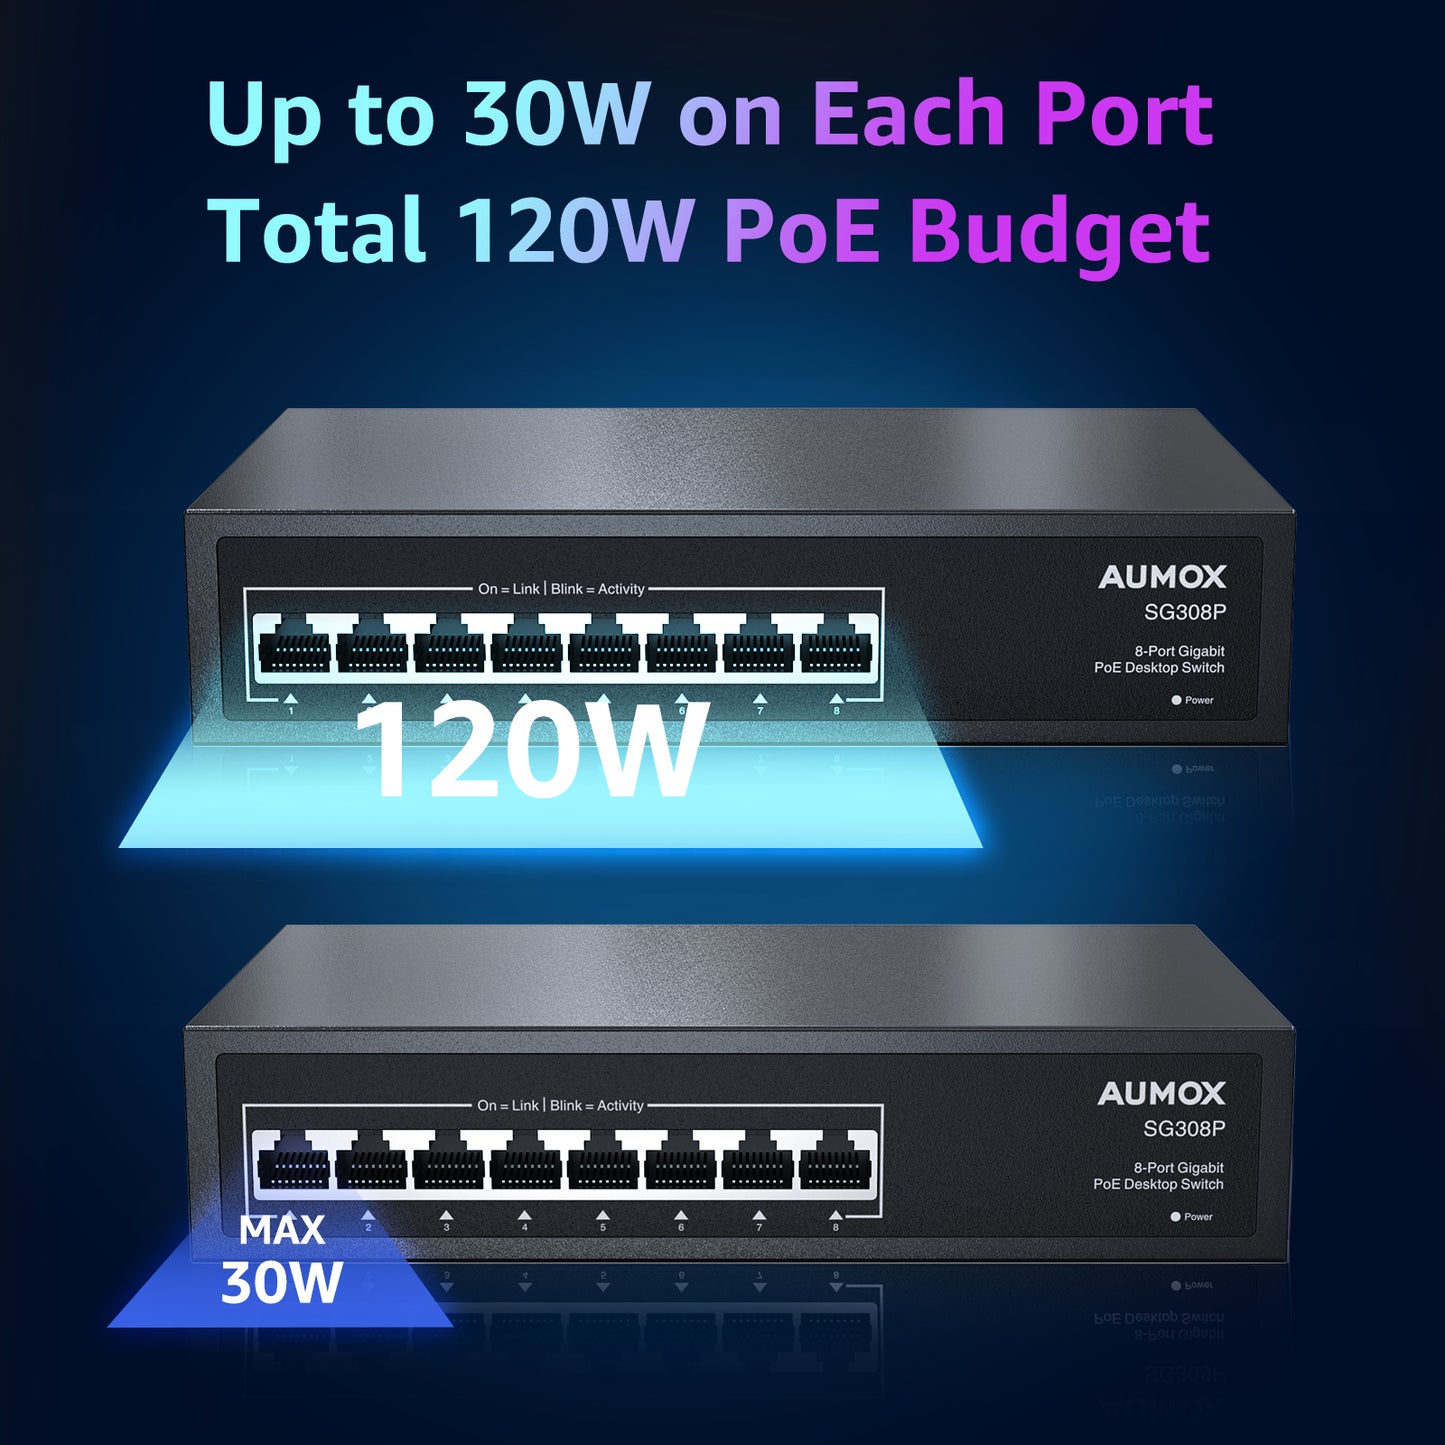 Conmutador PoE Gigabit de 8 puertos AUMOX 120W (SG308P)